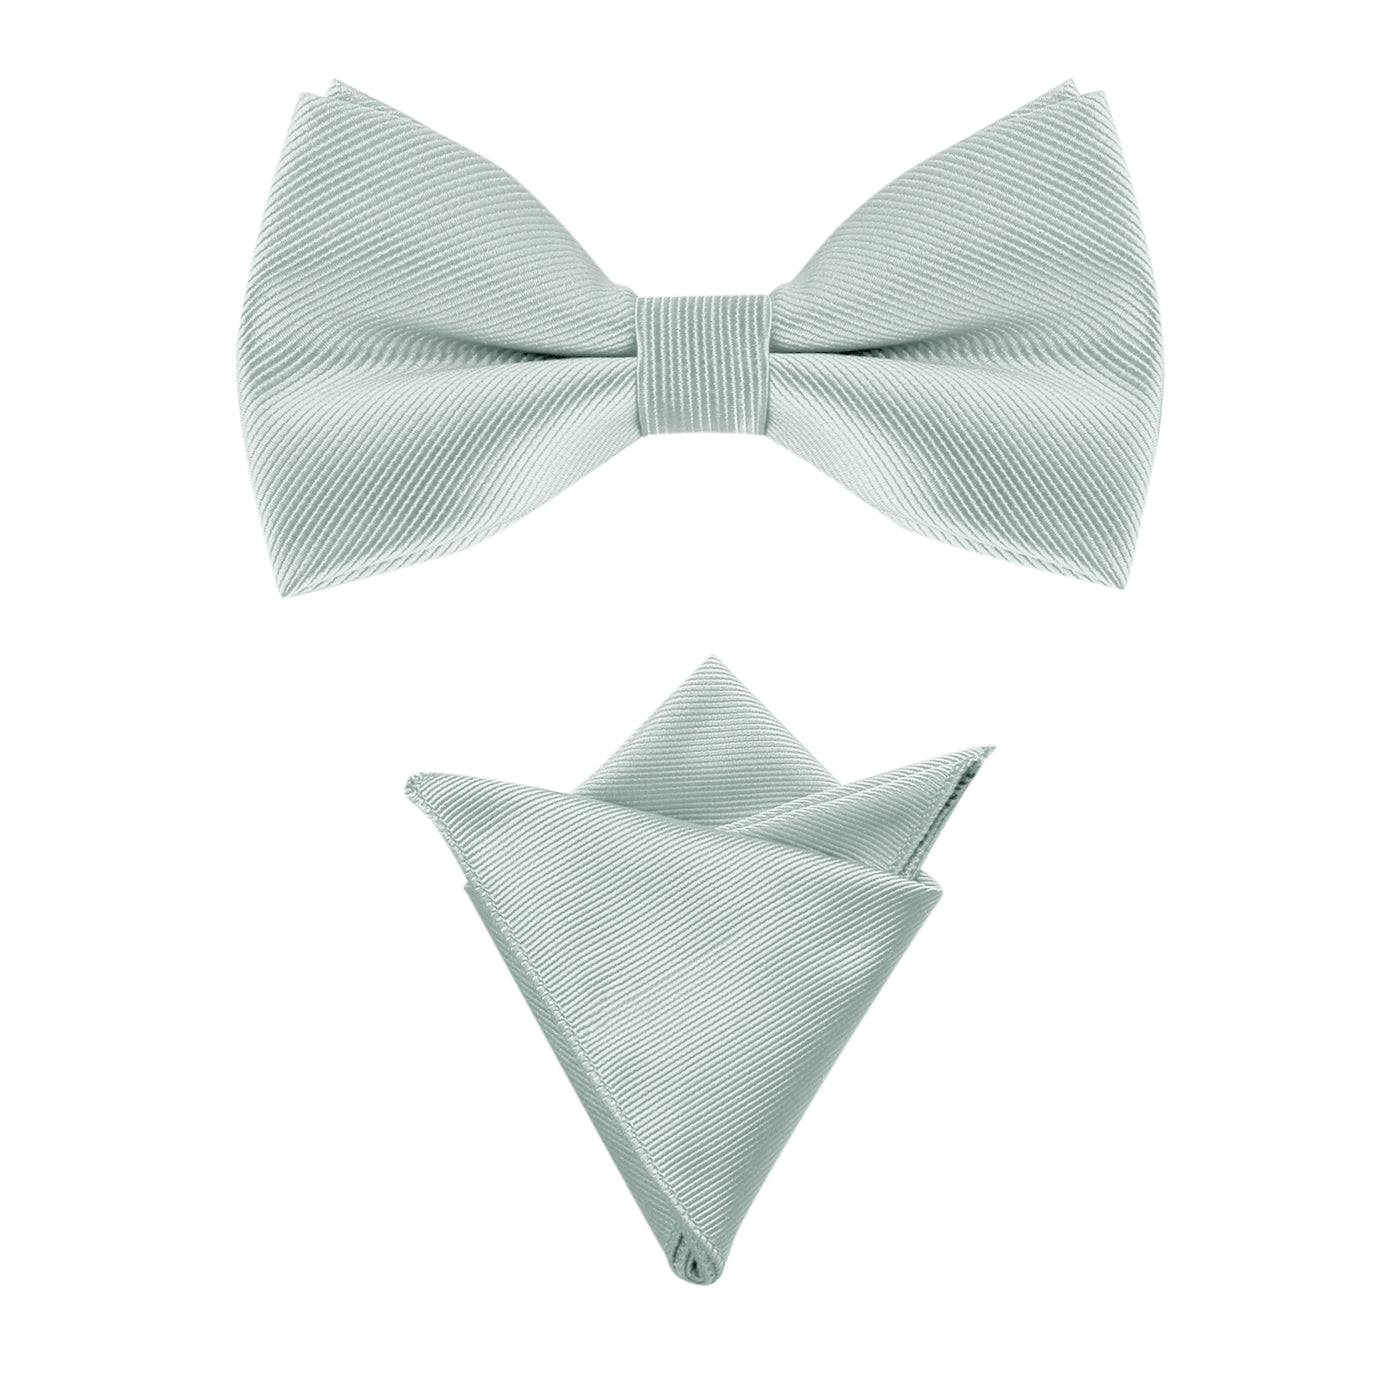 Allegra K Solid Color Pre-Tied Bow Tie Wedding Party Pocket Square Set